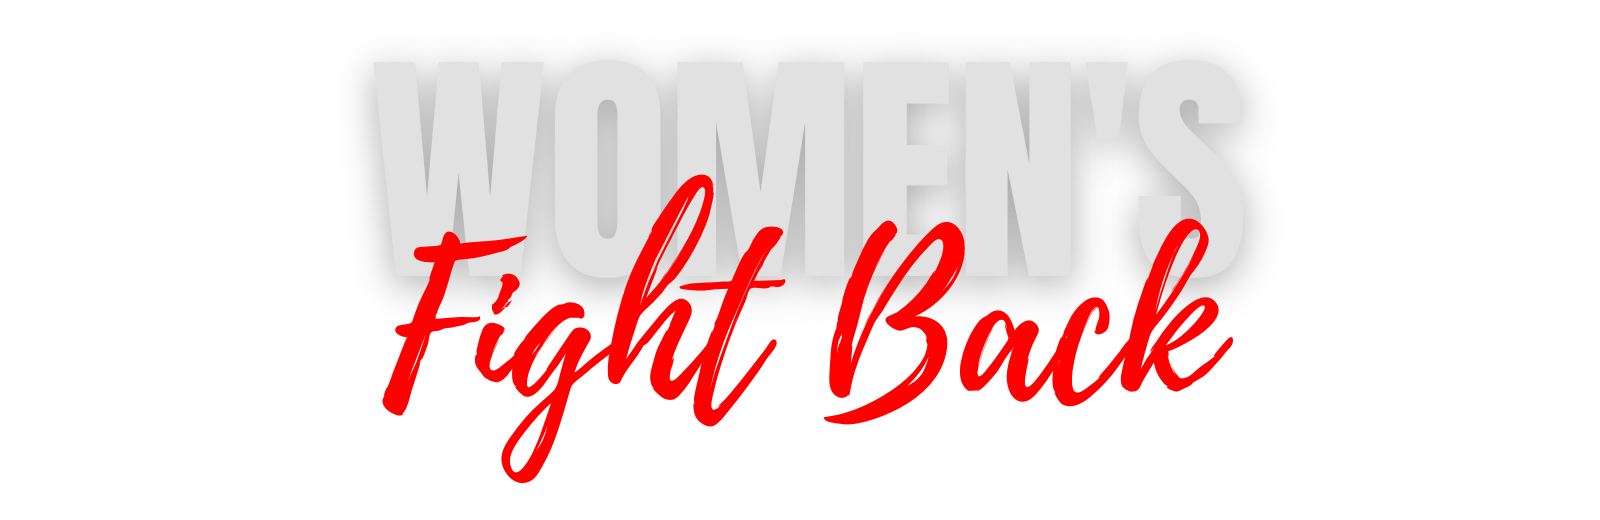 Women's Fight Back - Bannière principale